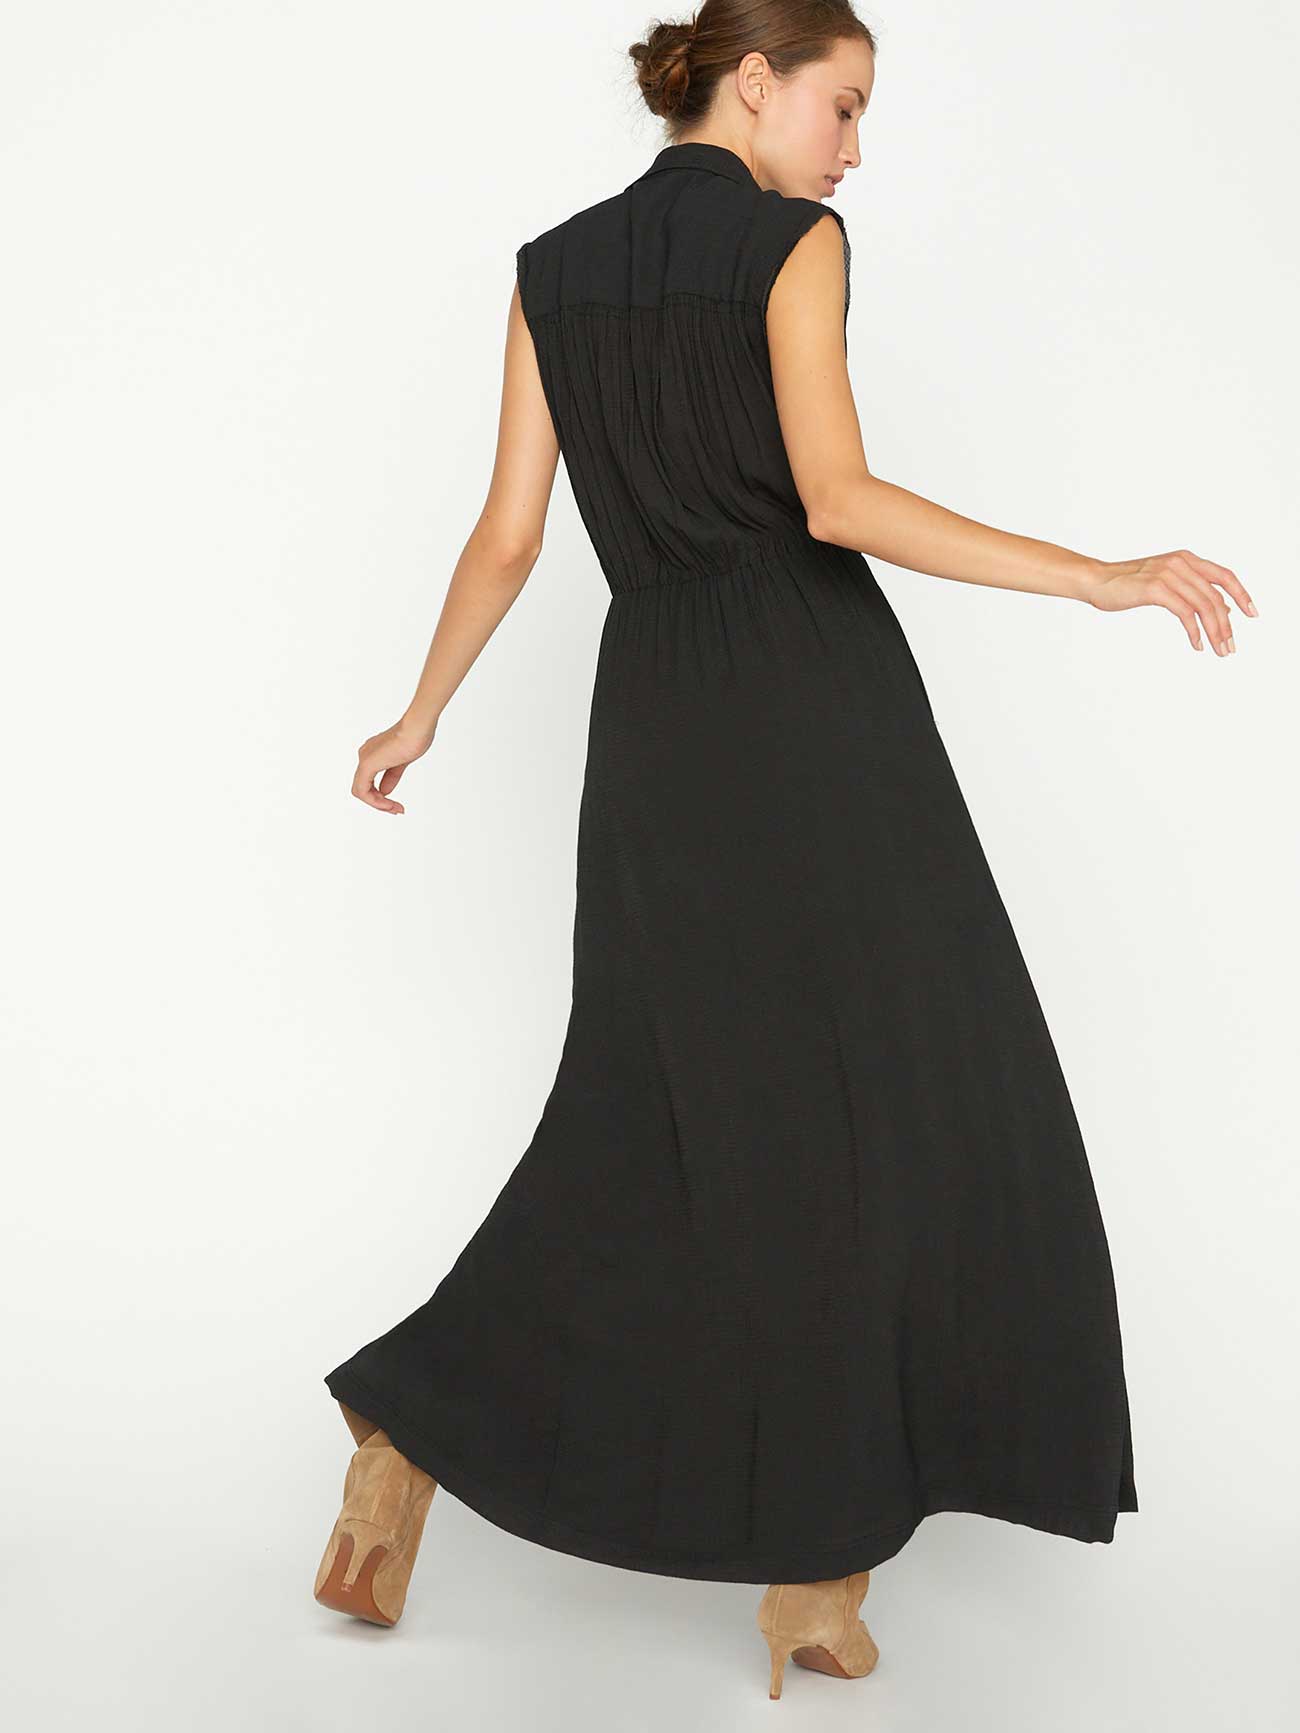 Brochu Walker Women's Madsen Sleeveless Maxi Dress, Black